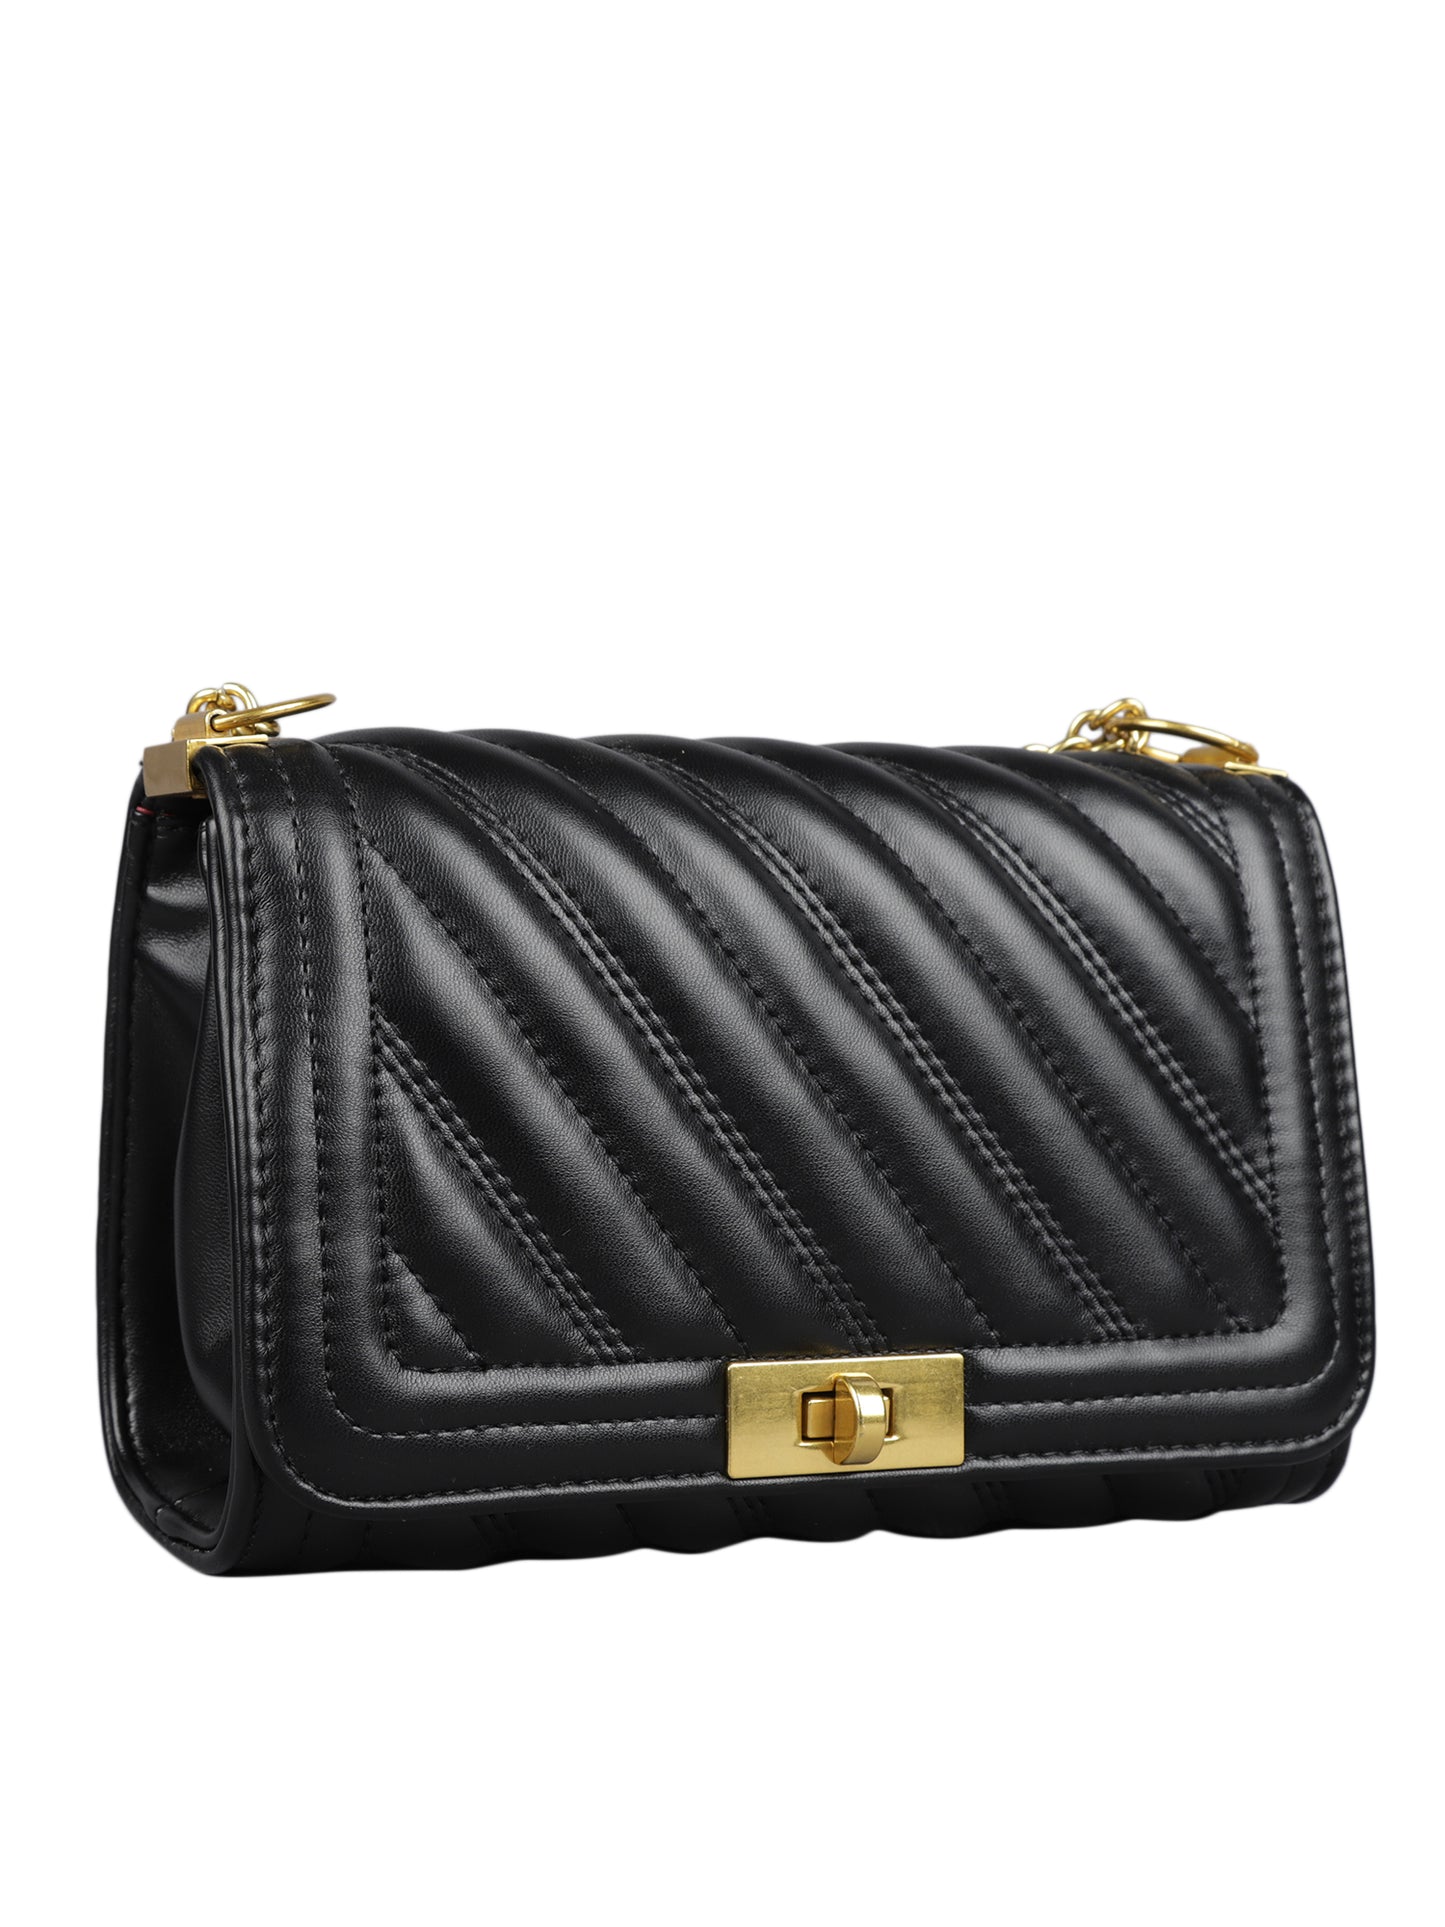 MINI WESST Women's Black Handbags(MWHB021BL)